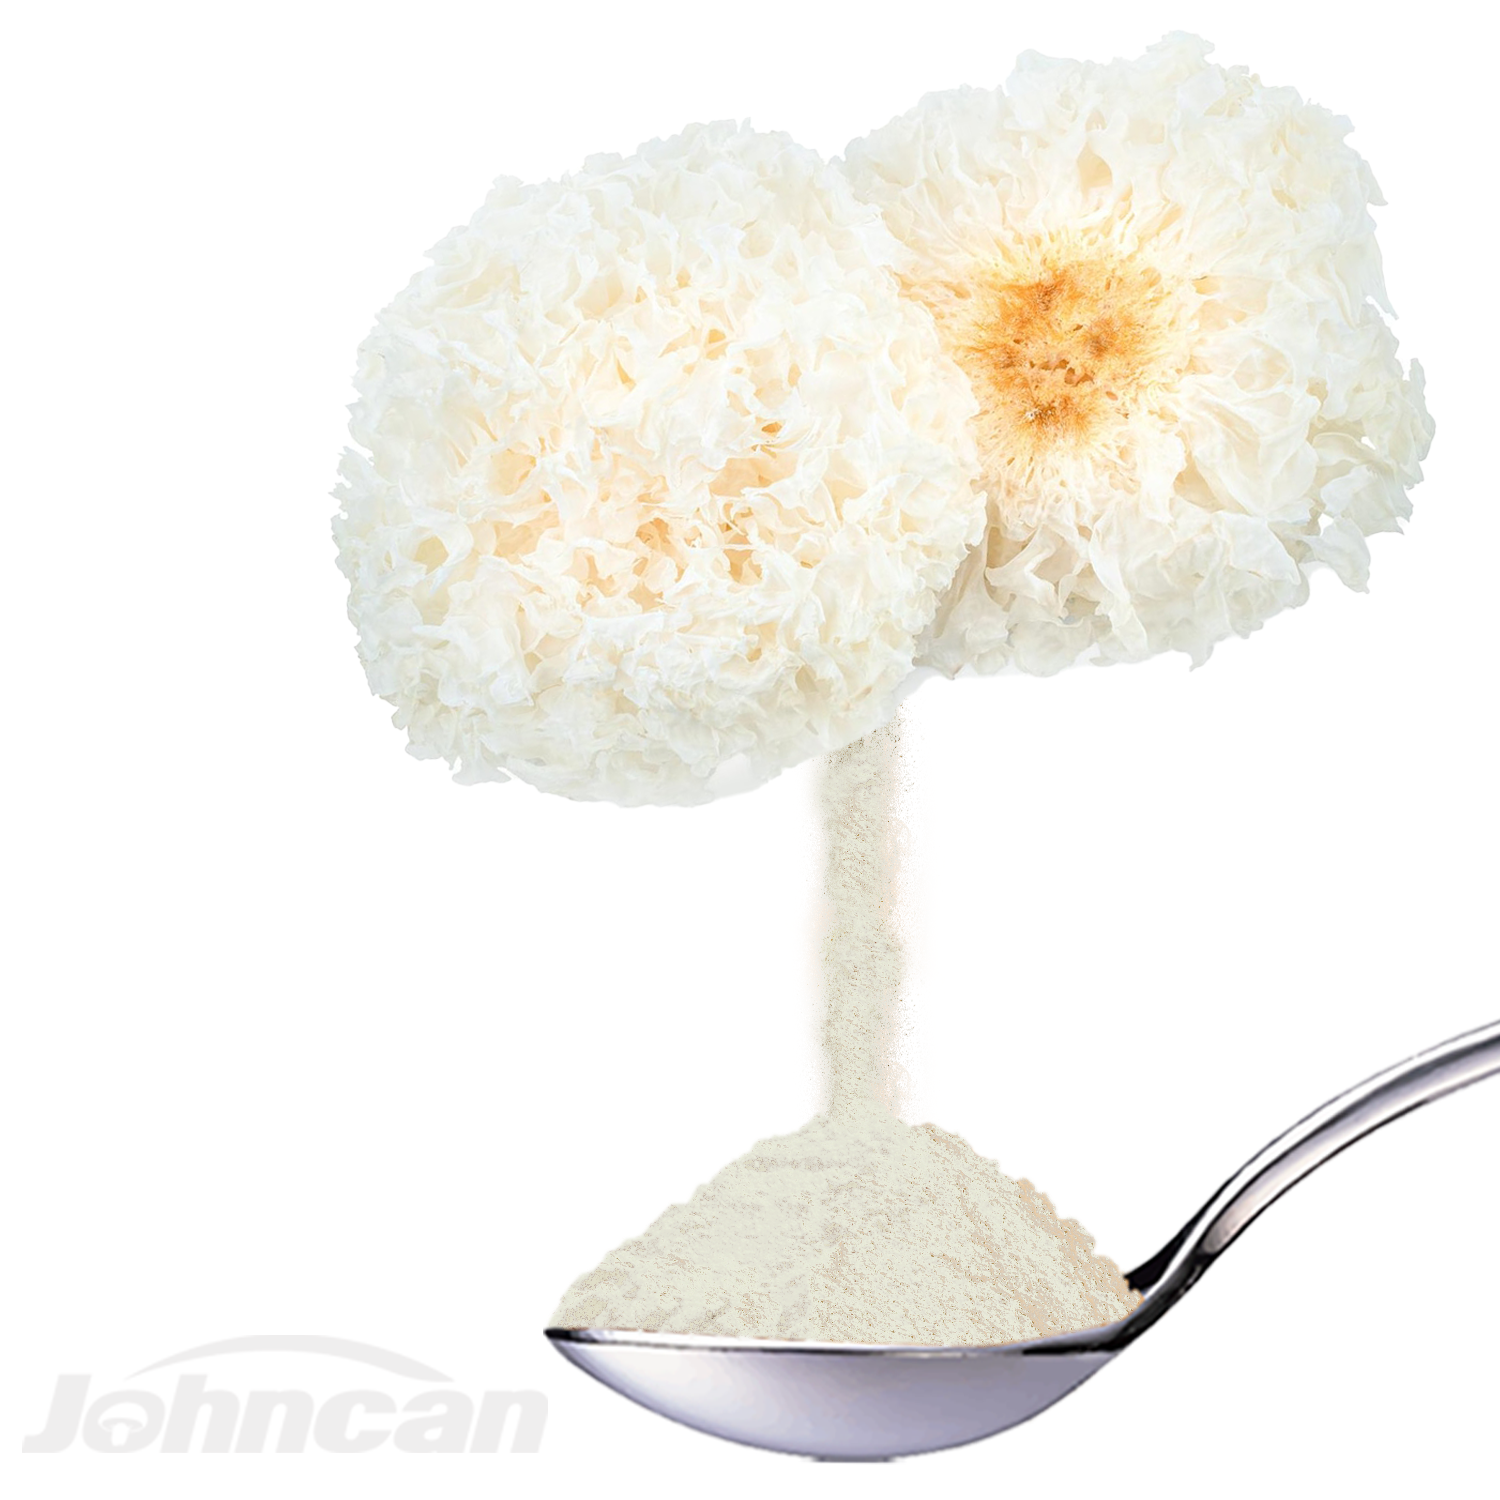 Hāʻawi ʻia ka hale hana i ka lepili ponoʻī ʻo Herbal Mushroom Extract Powder Tremella Fuciformis, Snow Fungus Featured Image